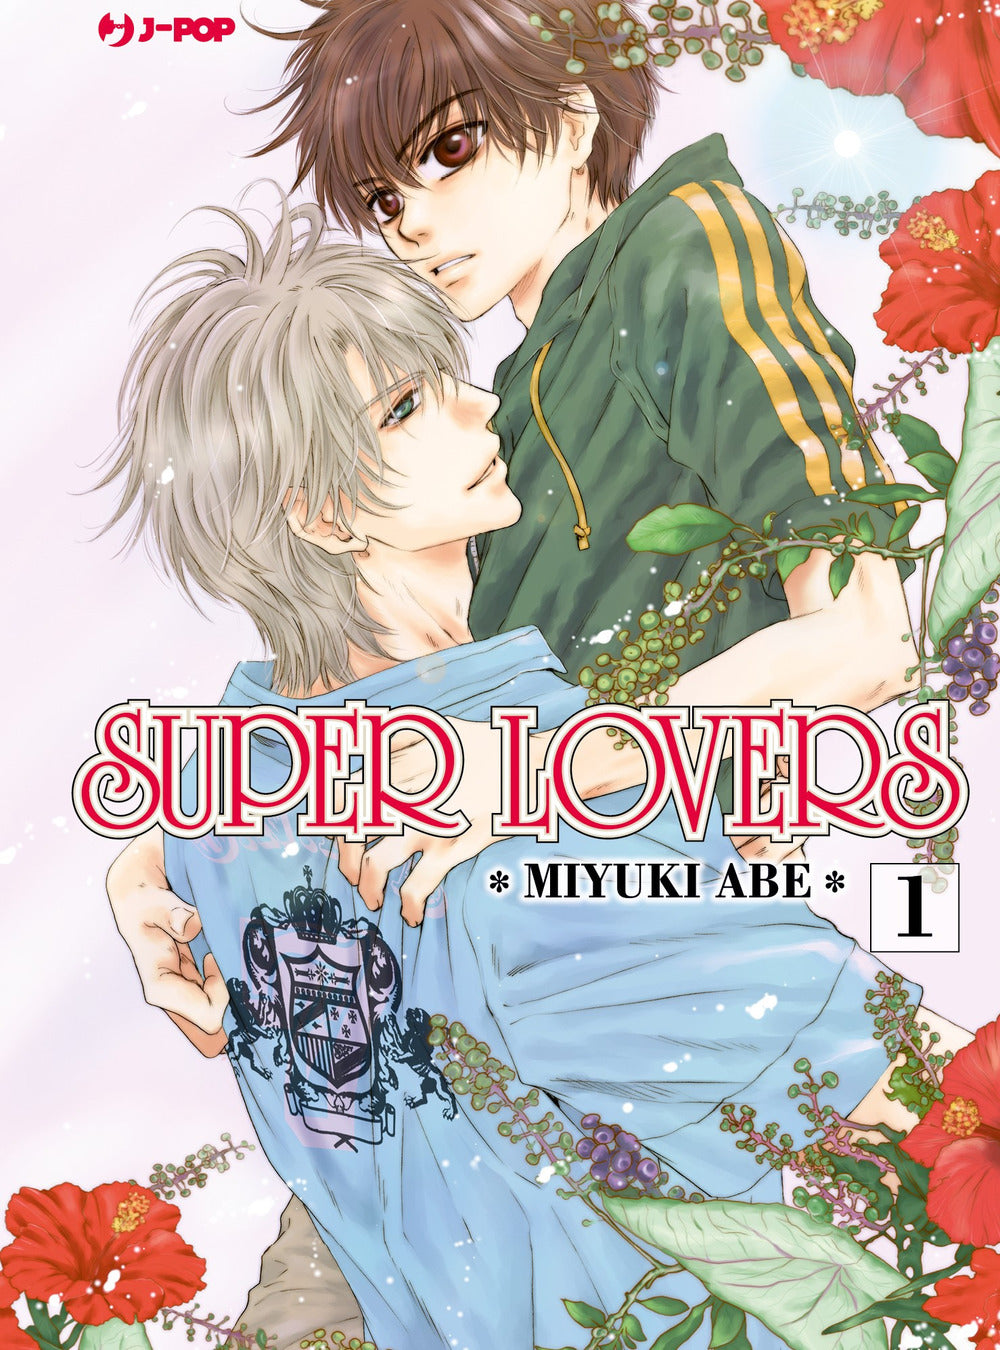 Super lovers. Vol. 1.